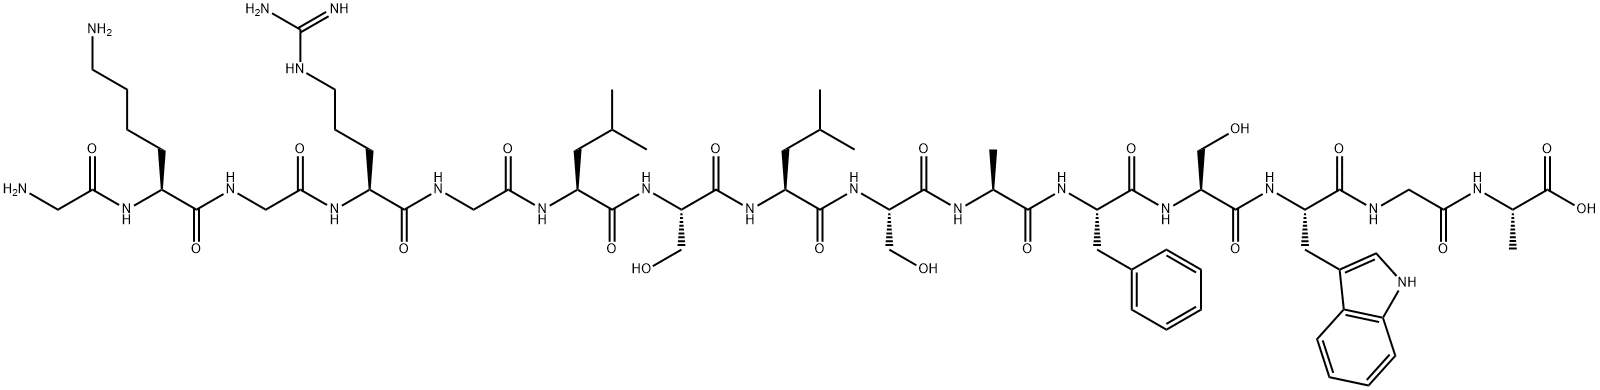 GLY-LYS-GLY-ARG-GLY-LEU-SER-LEU-SER-ALA-PHE-SER-TRP-GLY-ALA|肽抑制剂[ALA113]-MBP (104-118)